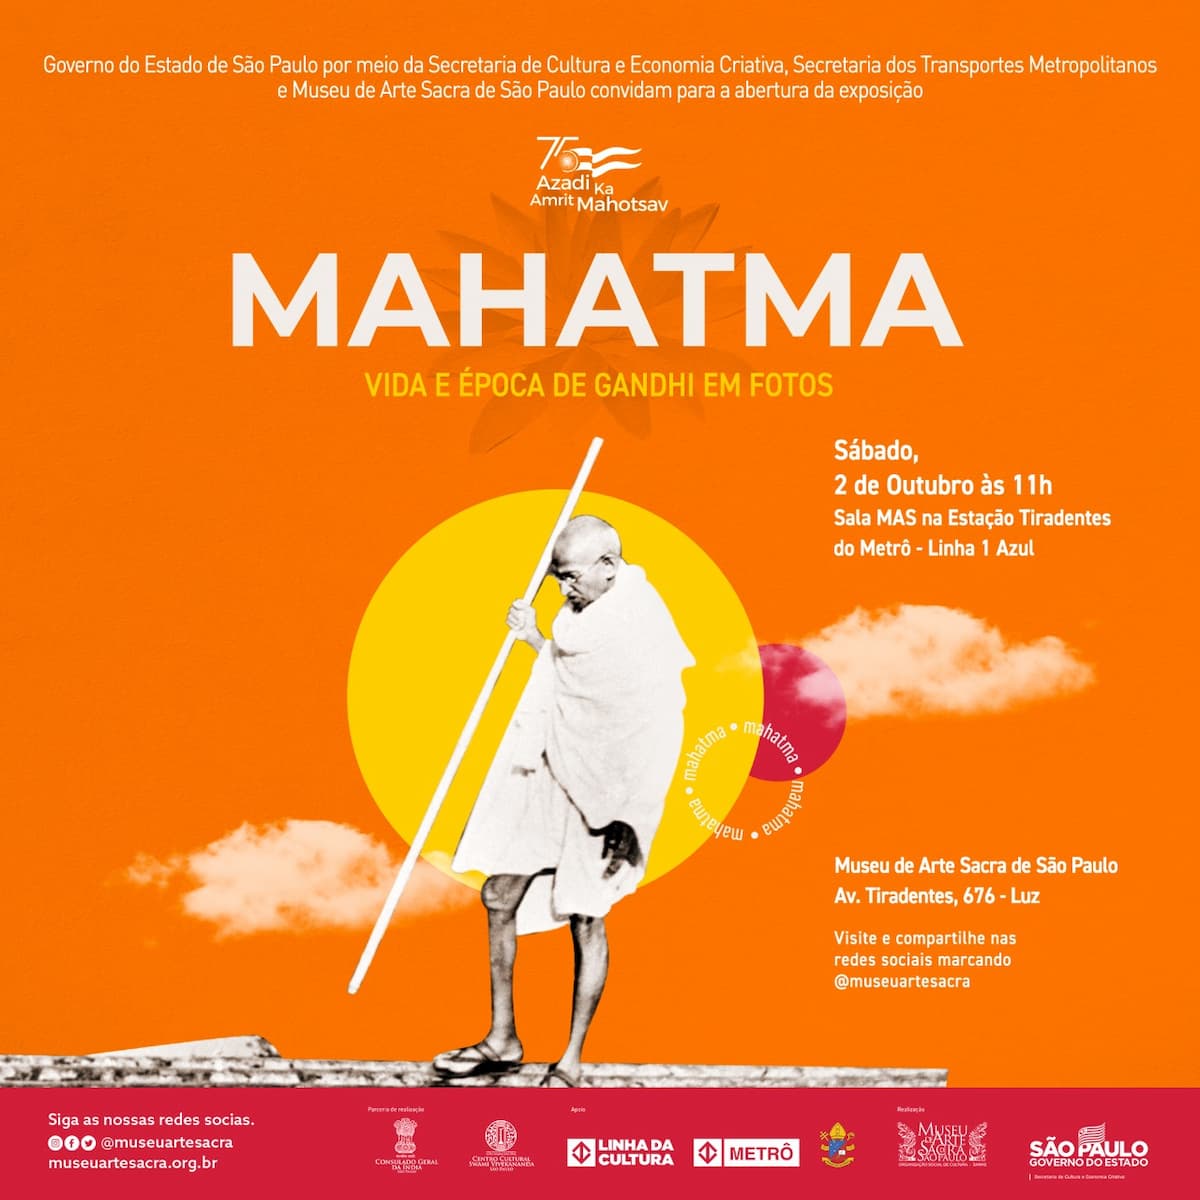 Exposição “MAHATMA” no Museu de Arte Sacra de São Paulo - MAS / SP. Divulgação.